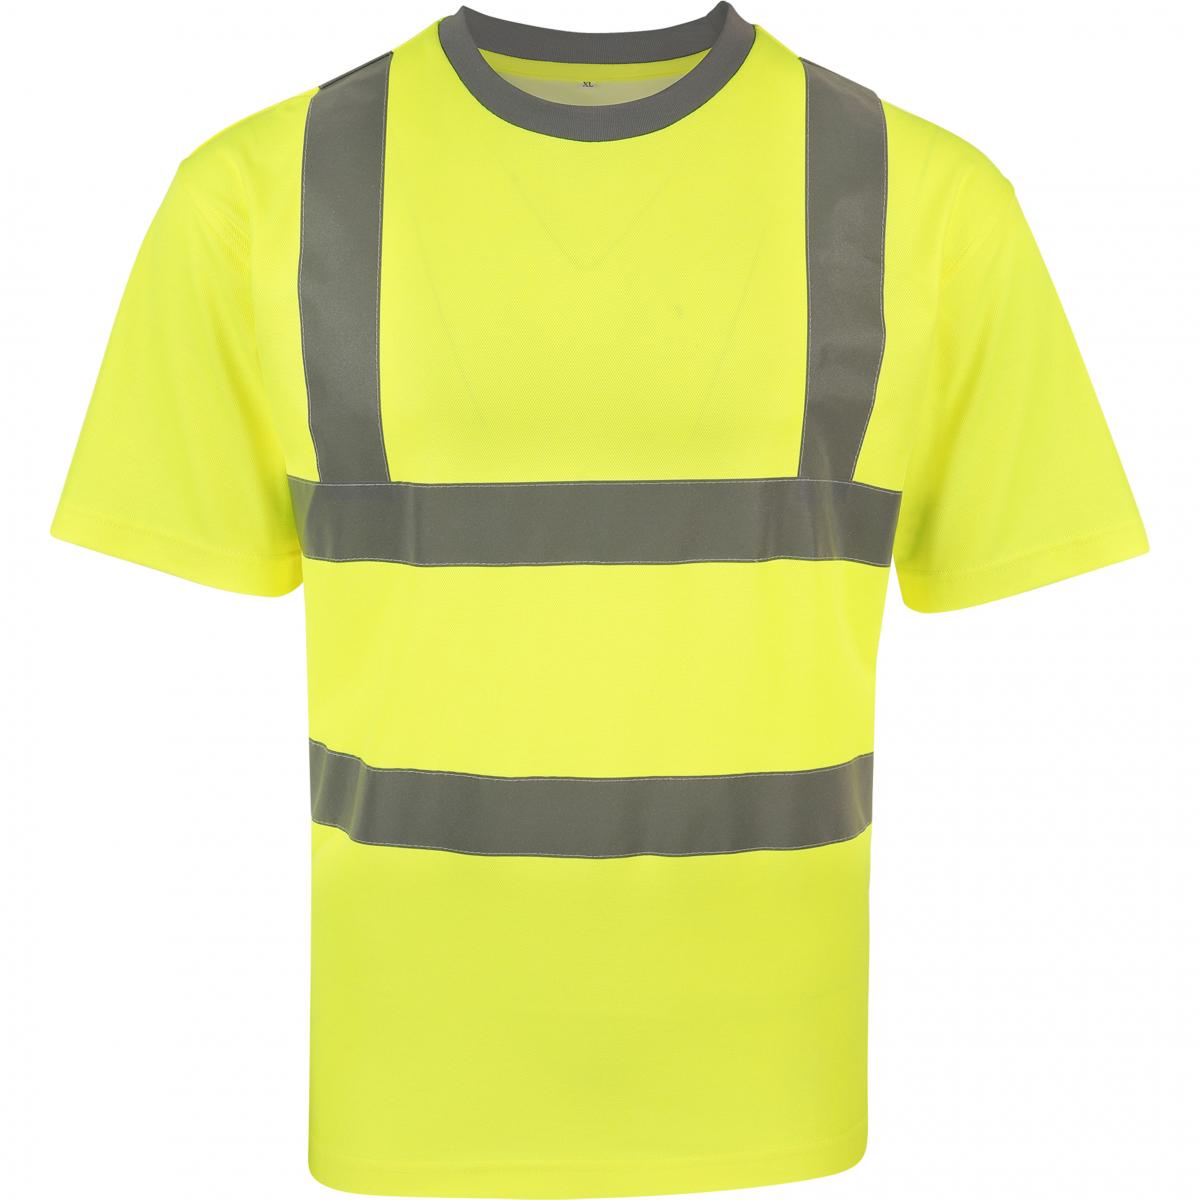 Hersteller: Korntex Herstellernummer: KXPCSHIRT Artikelbezeichnung: Herren Shirt Blended fabric T-Shirt, EN ISO 20471:2013 Farbe: Signal Yellow